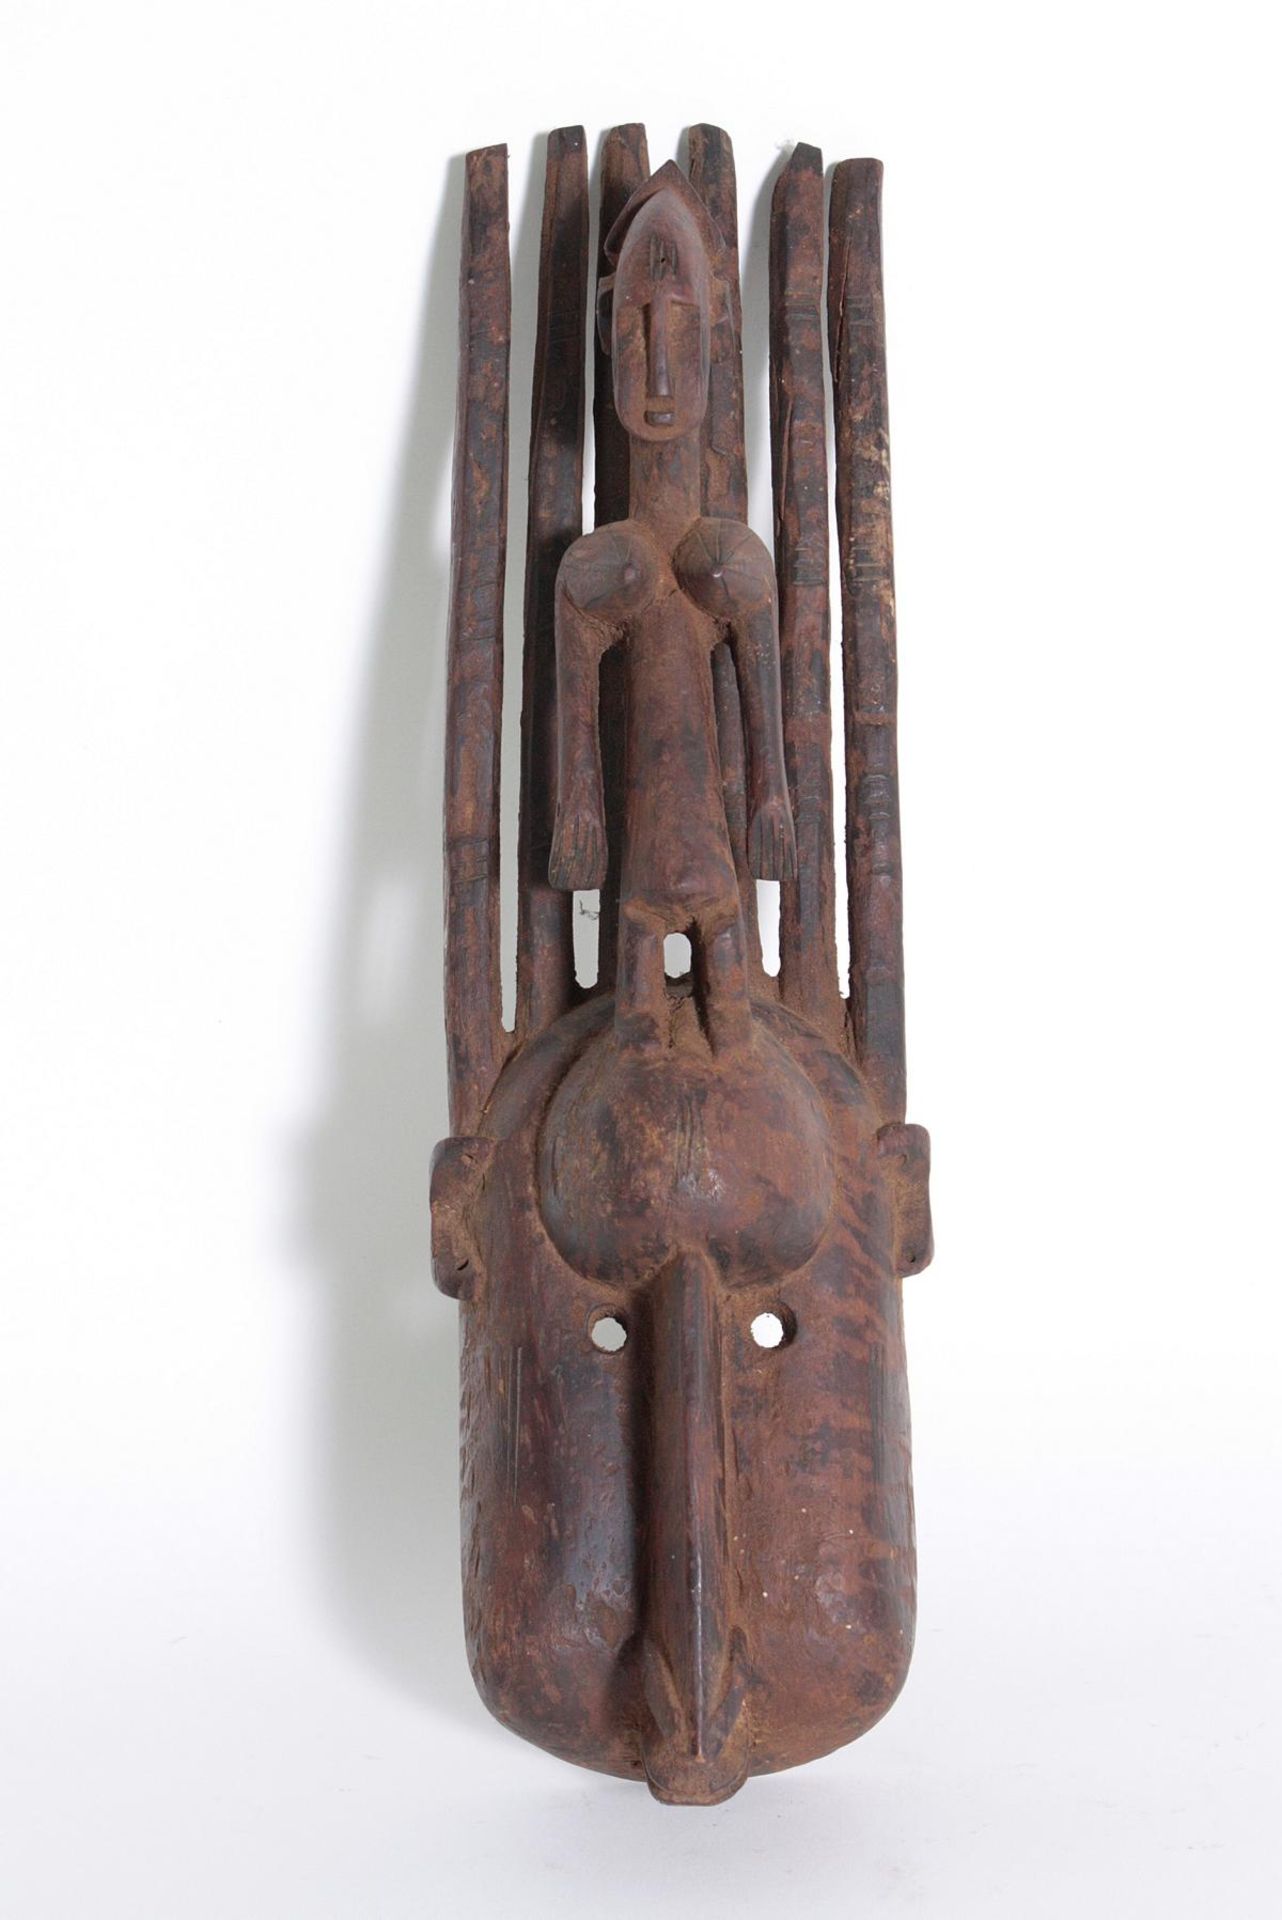 N'tomo Maske, Bamana, Mali, 1. Hälfte 20. Jh.Holz, matte braun-schwarze Patina mit Gebrauchsspuren